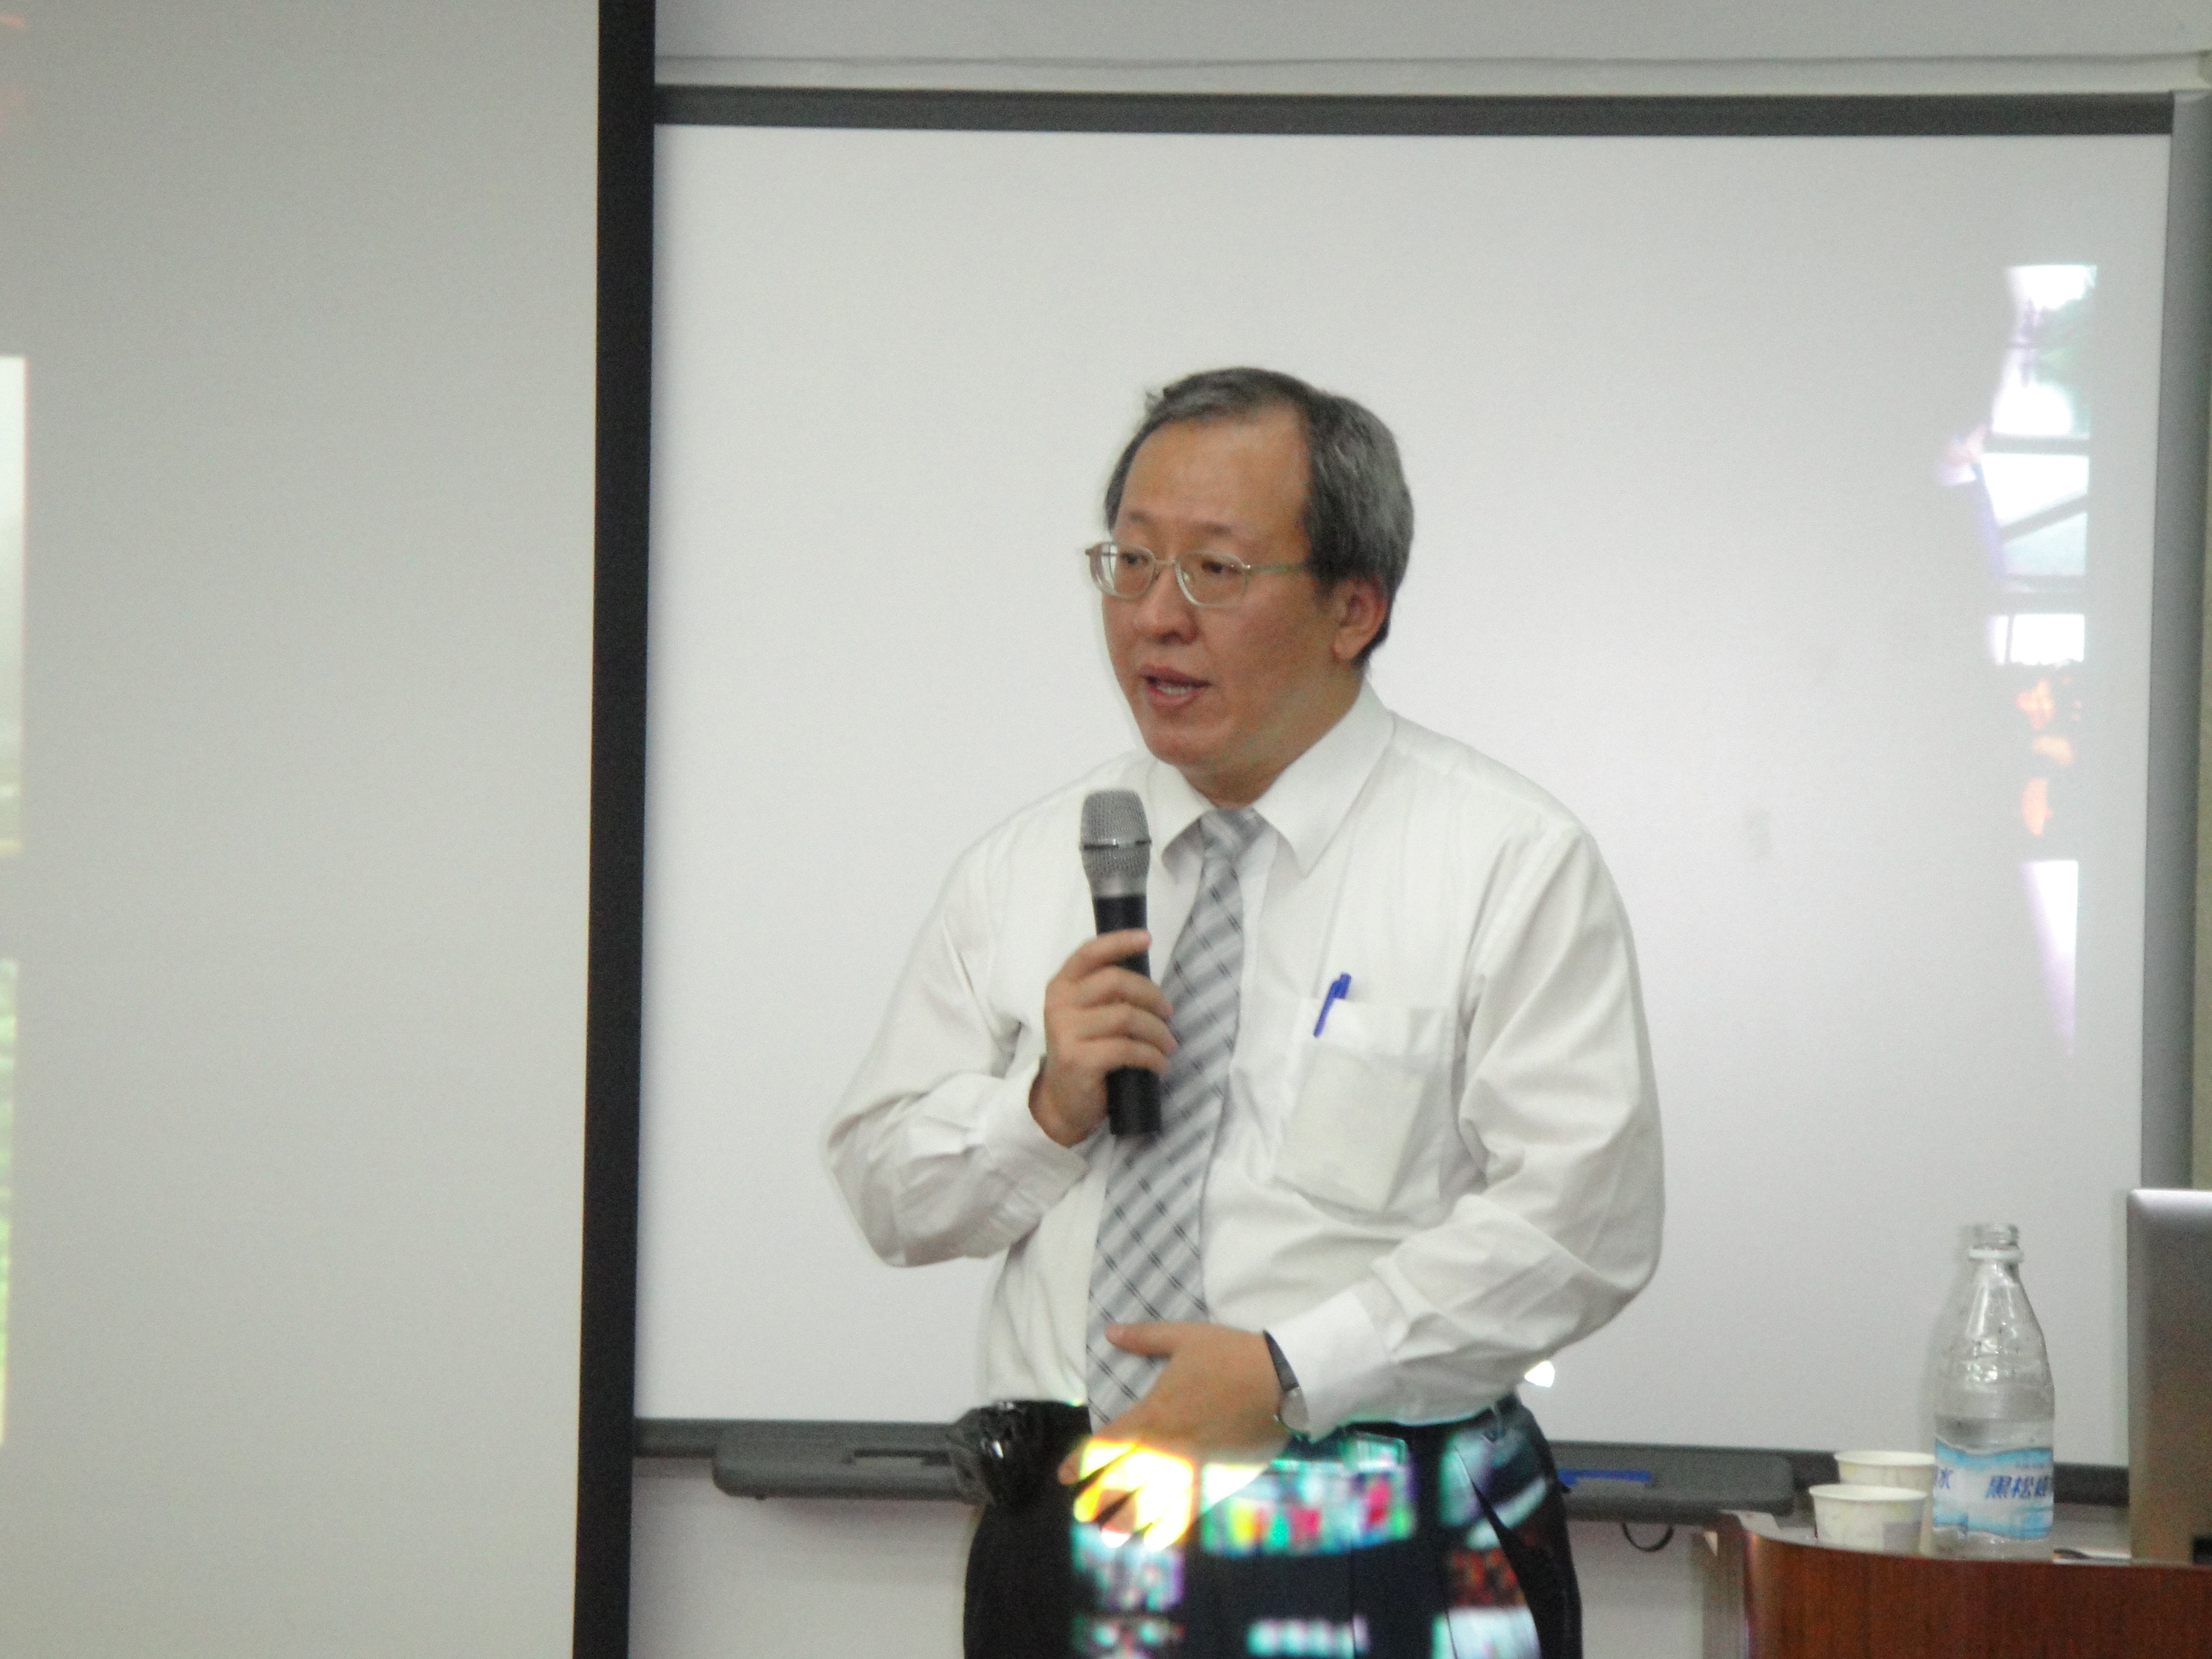 「台灣大學創新育成中心生技領域主持人 徐源泰 教授」專題演講